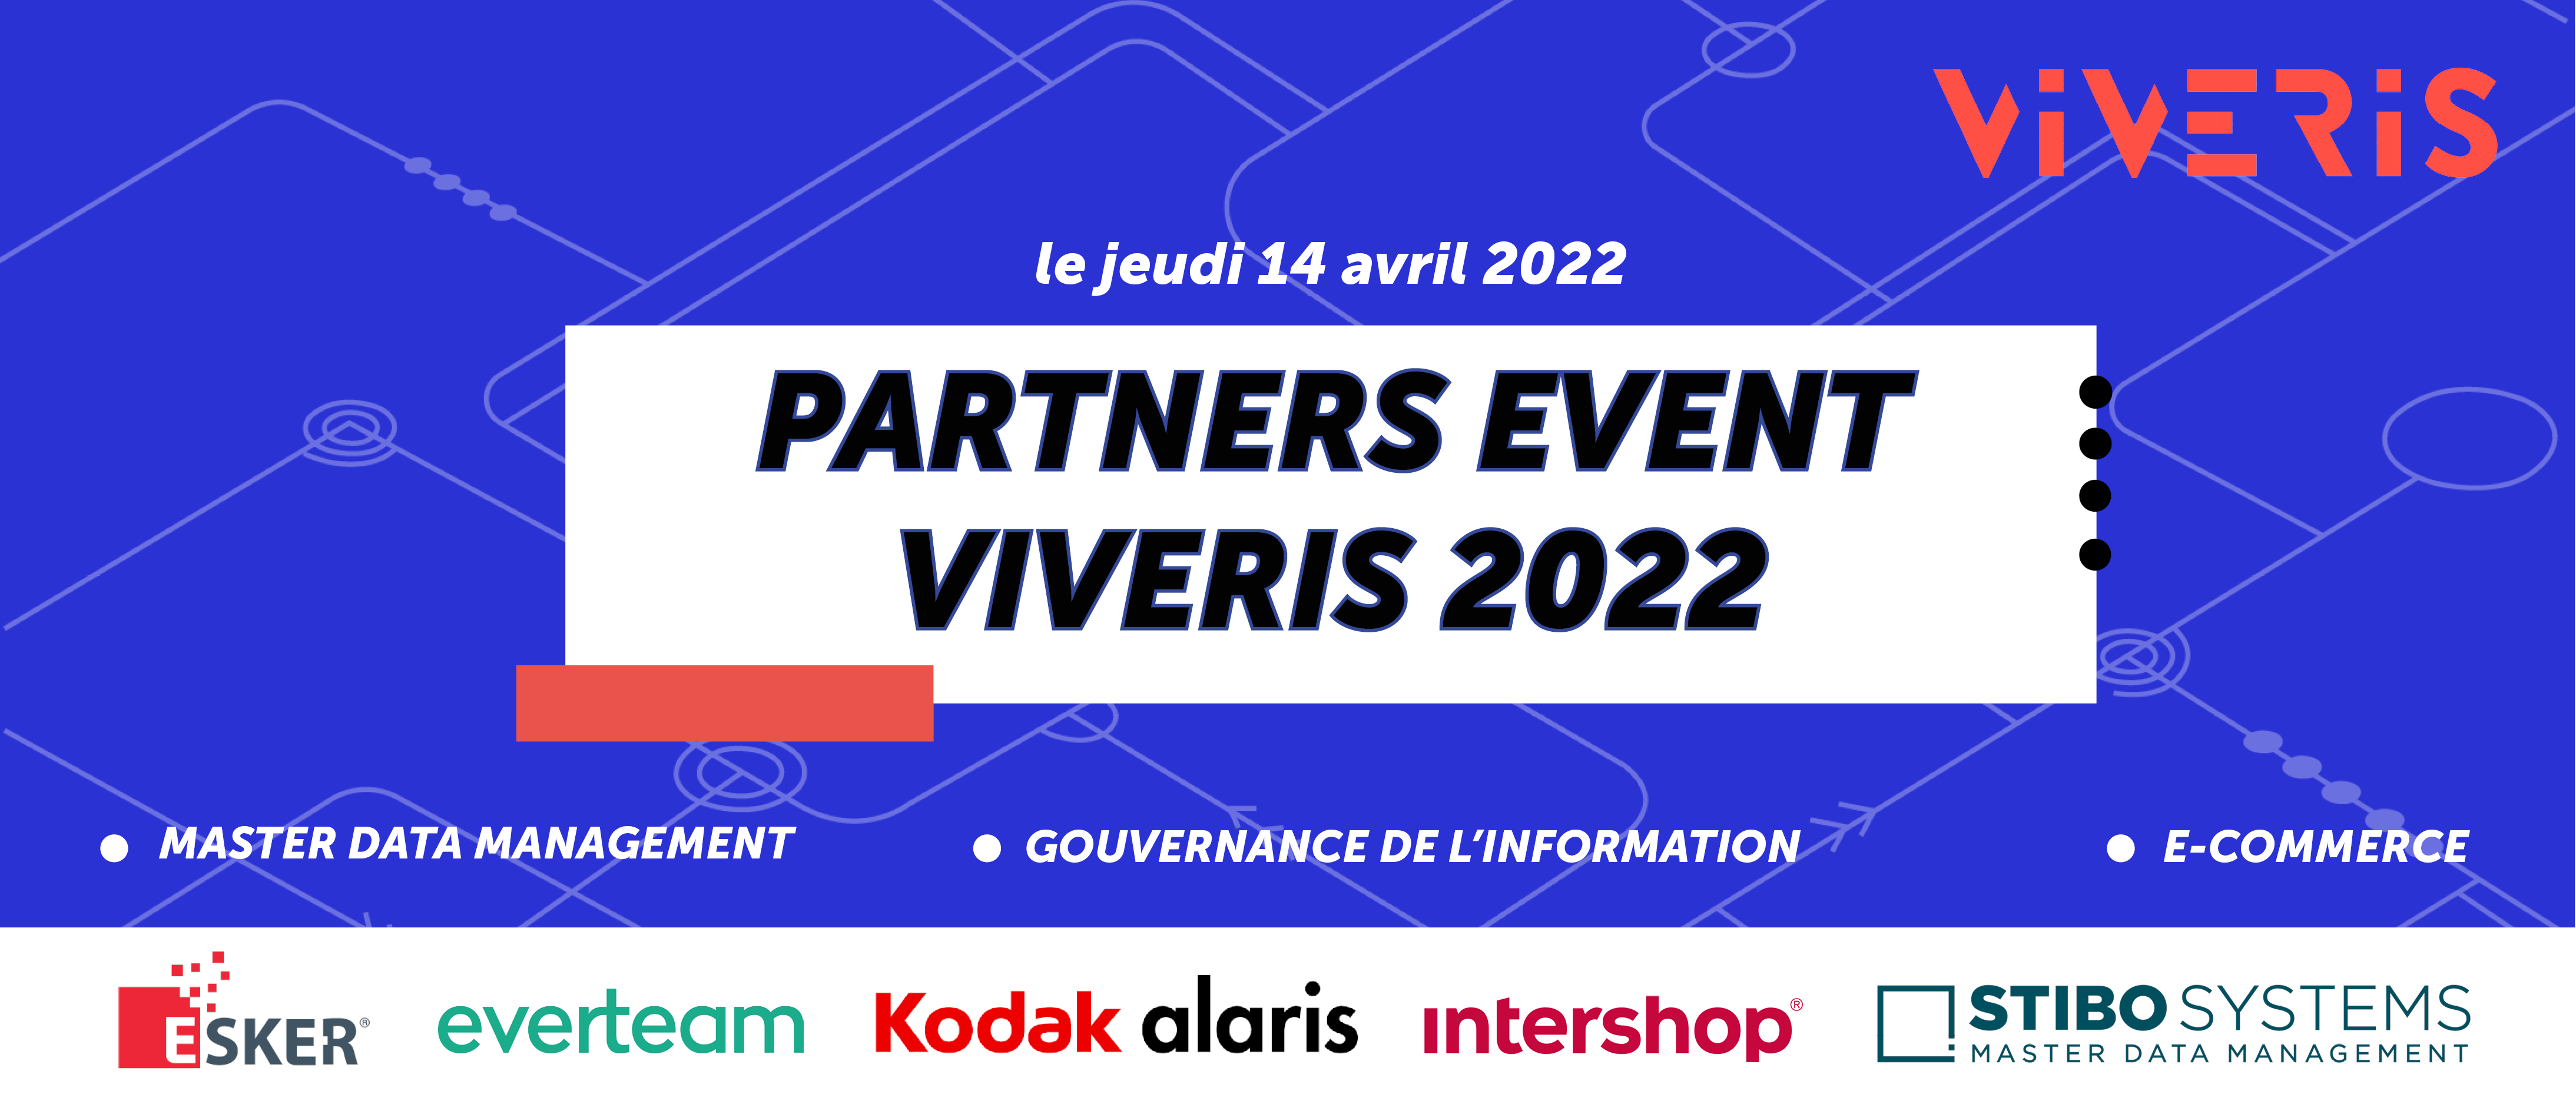 Partners Event Viveris 2022